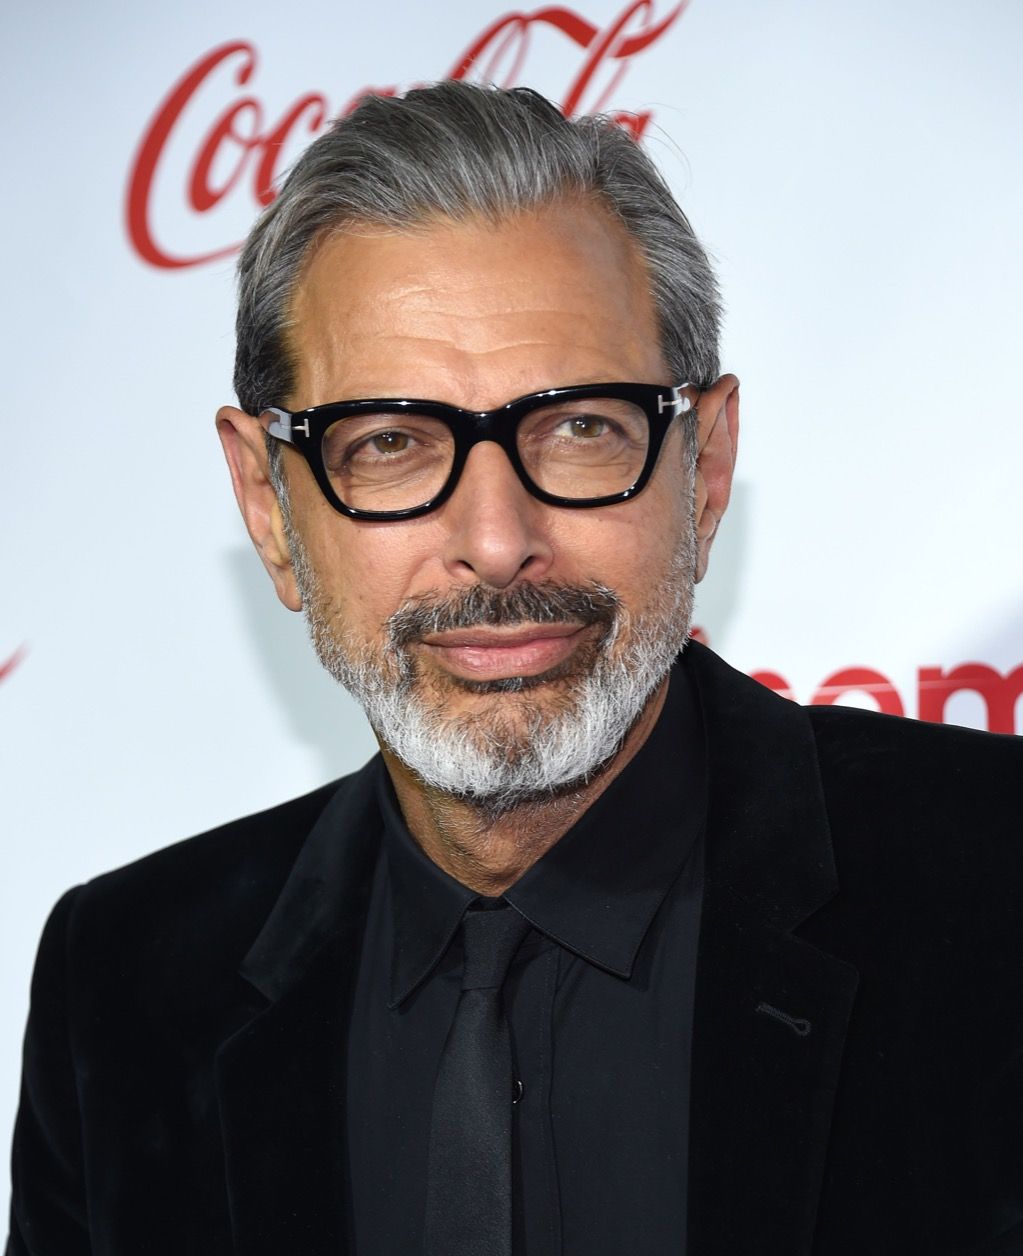 Jeff Goldblum kändis tips om åldrande